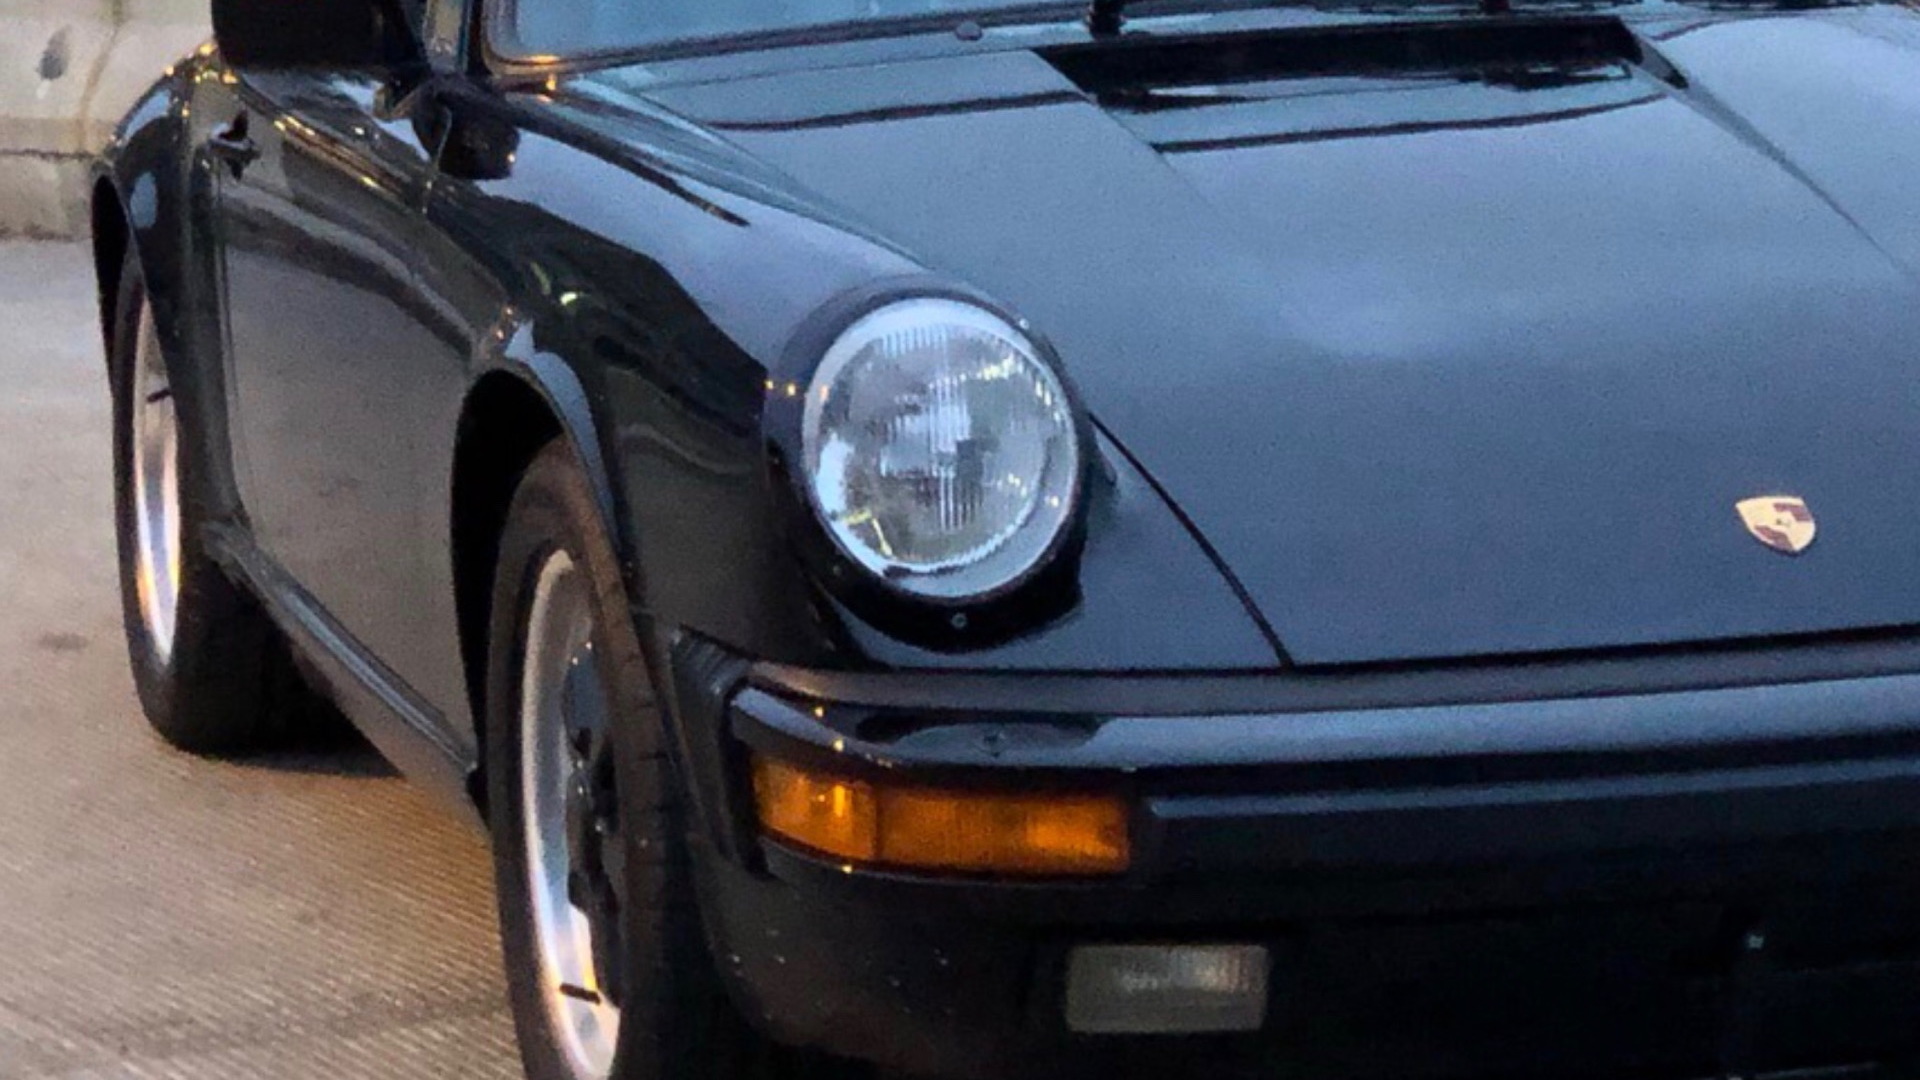 Tom Cruise's old 1986 Porsche 911 Targa sells for $86,000